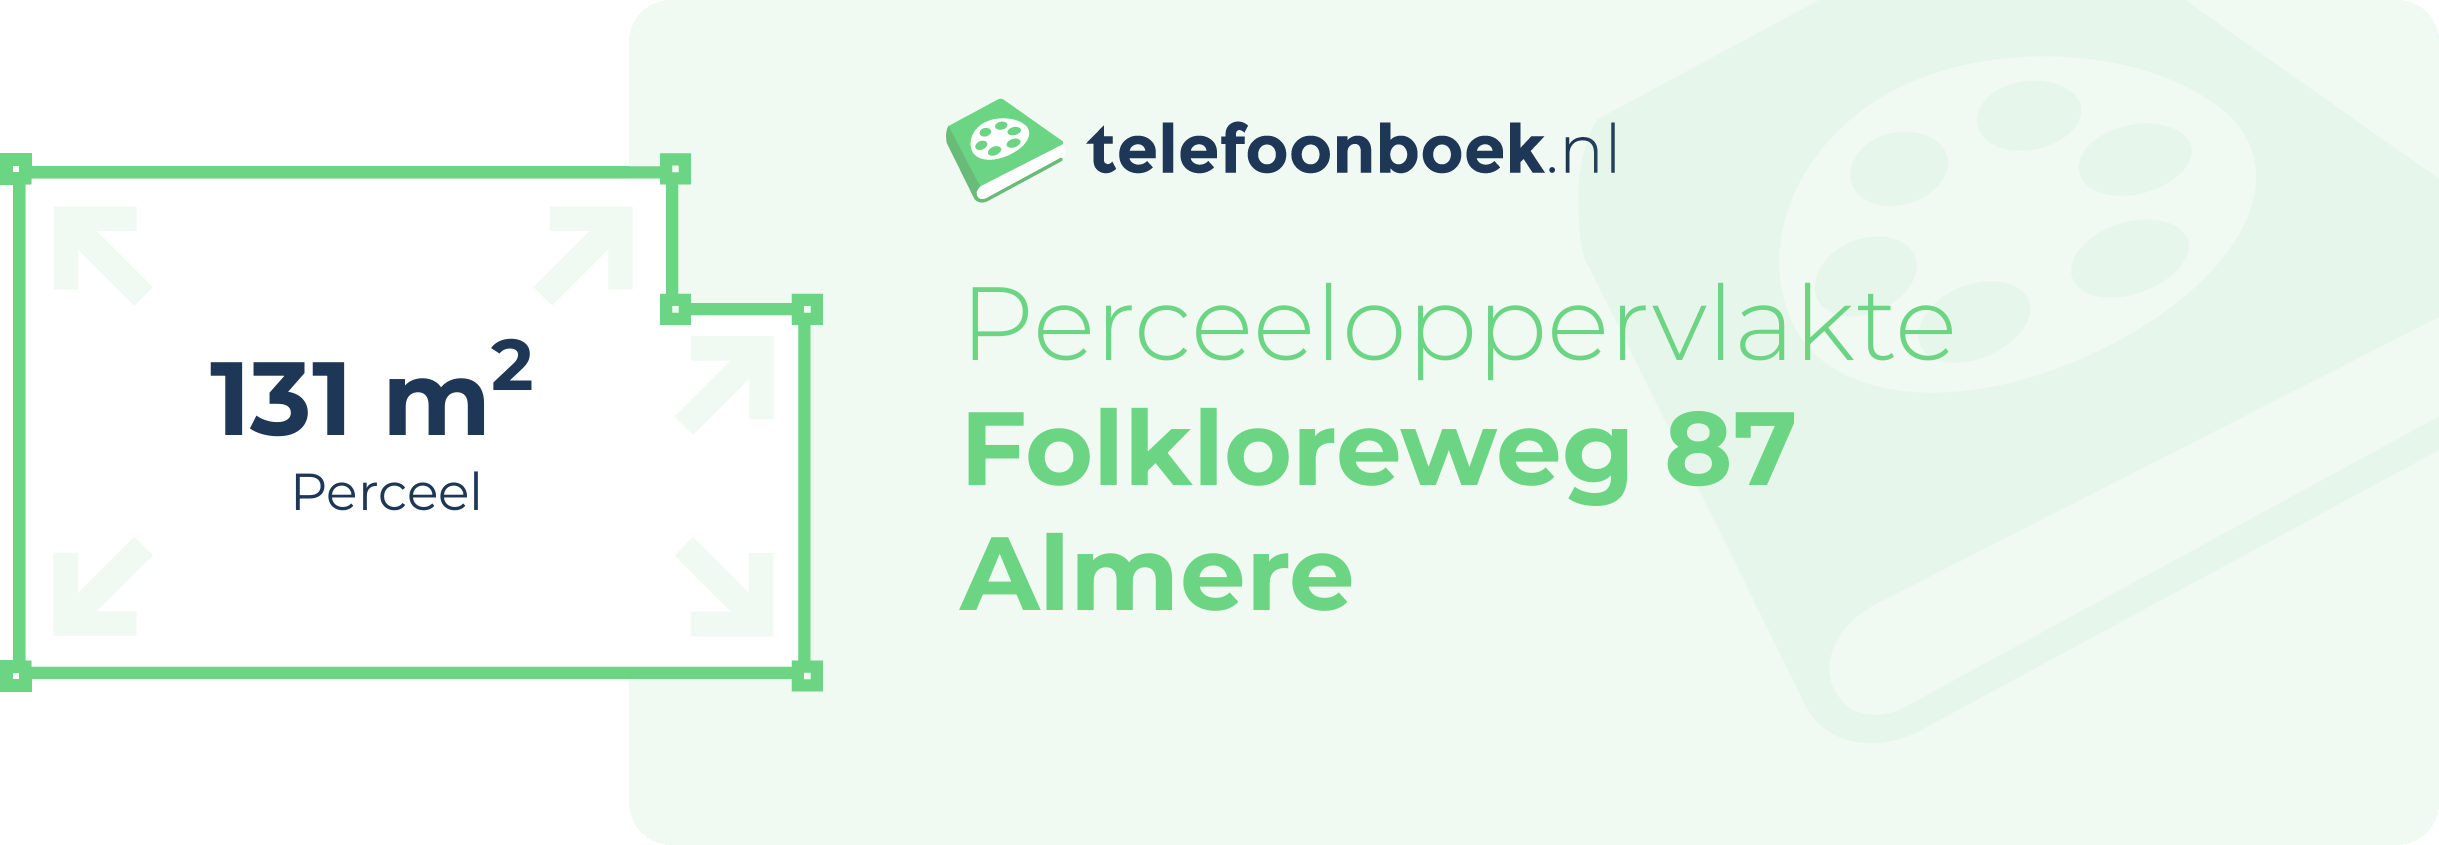 Perceeloppervlakte Folkloreweg 87 Almere